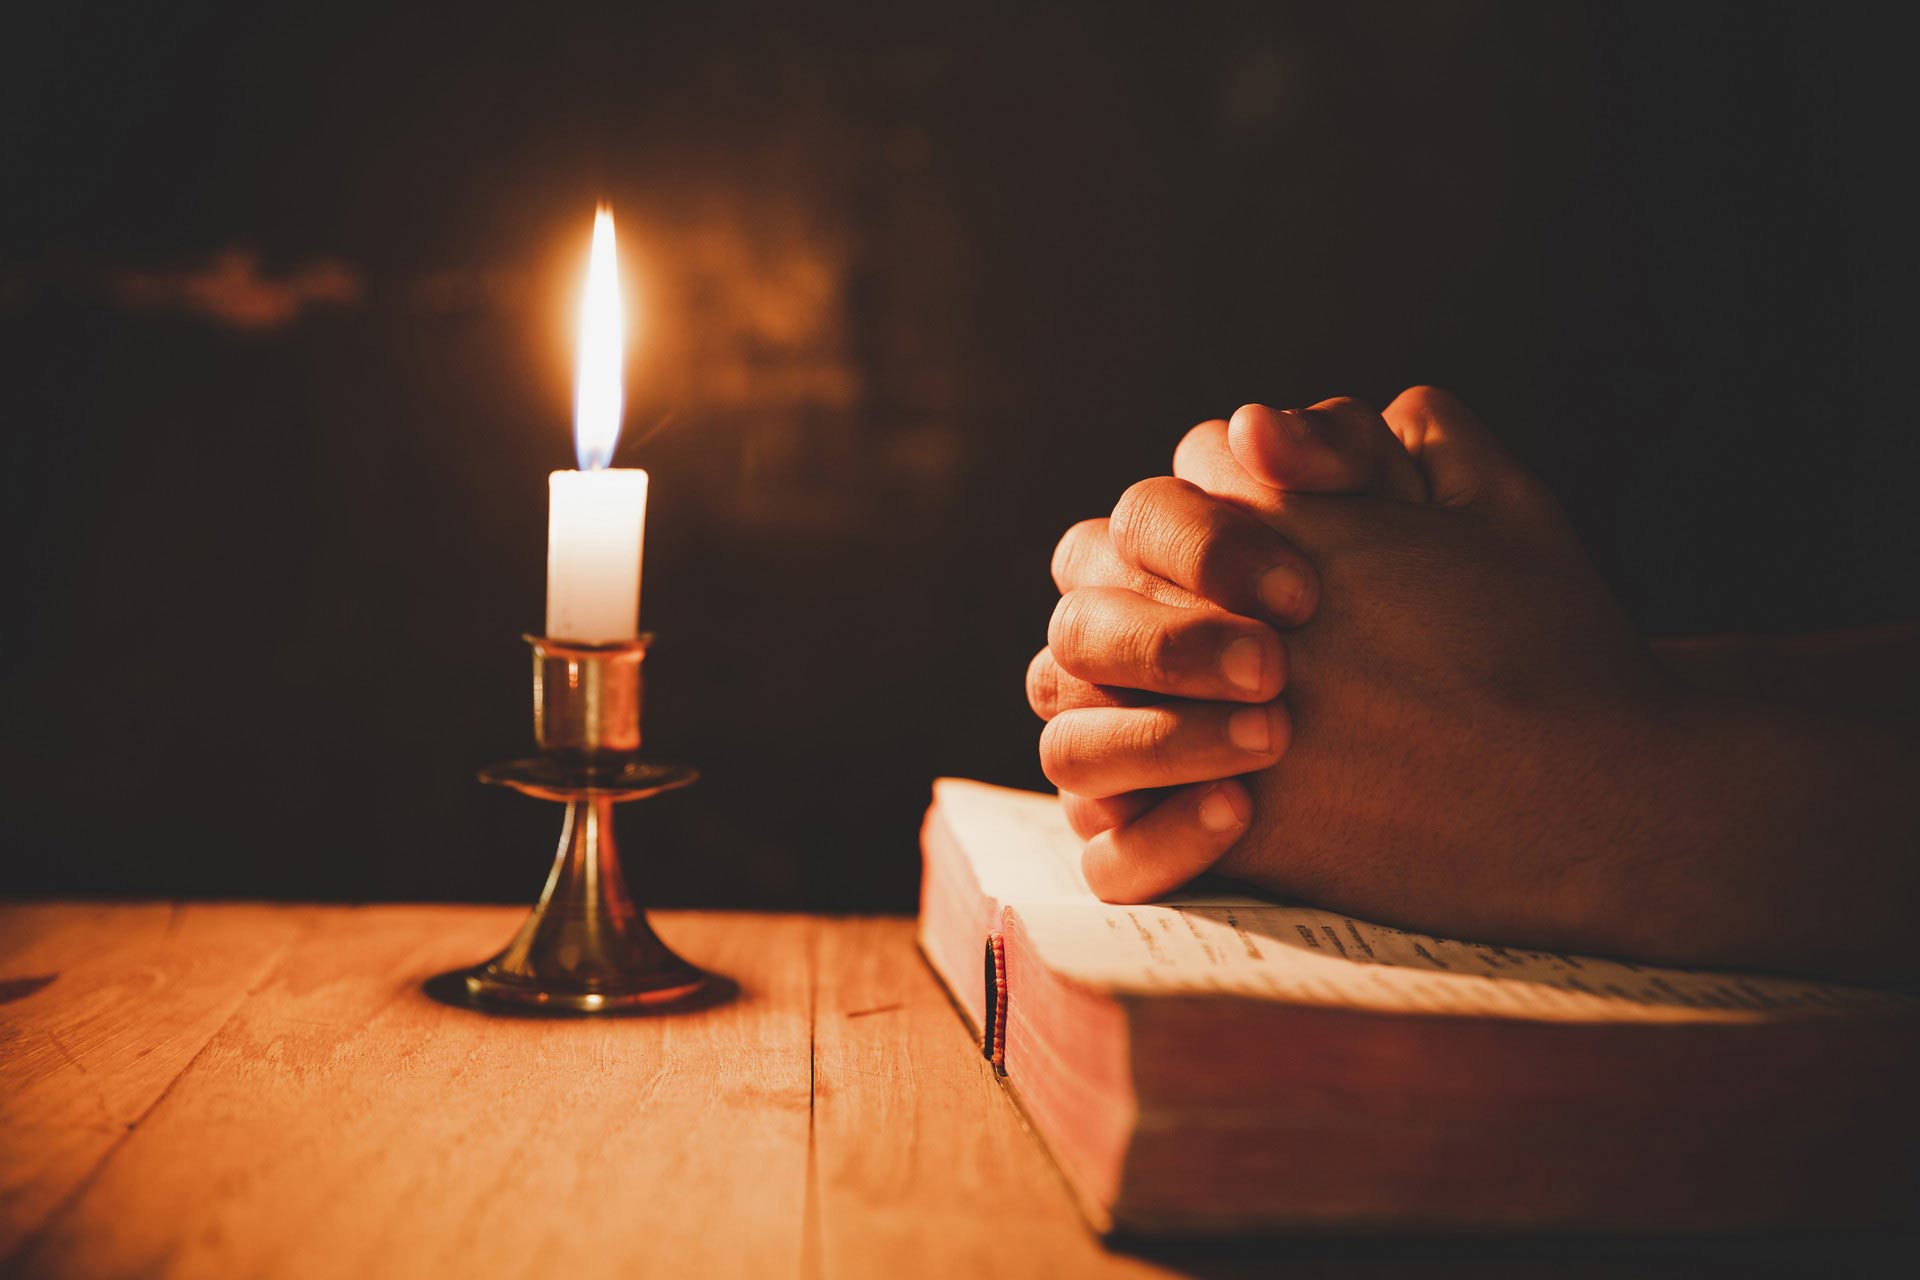 Cầu nguyện là một quà tặng của Chúa: Hiểu bản chất thực sự của cầu nguyện |  Tỉnh Dòng Chúa Cứu Thế Việt Nam